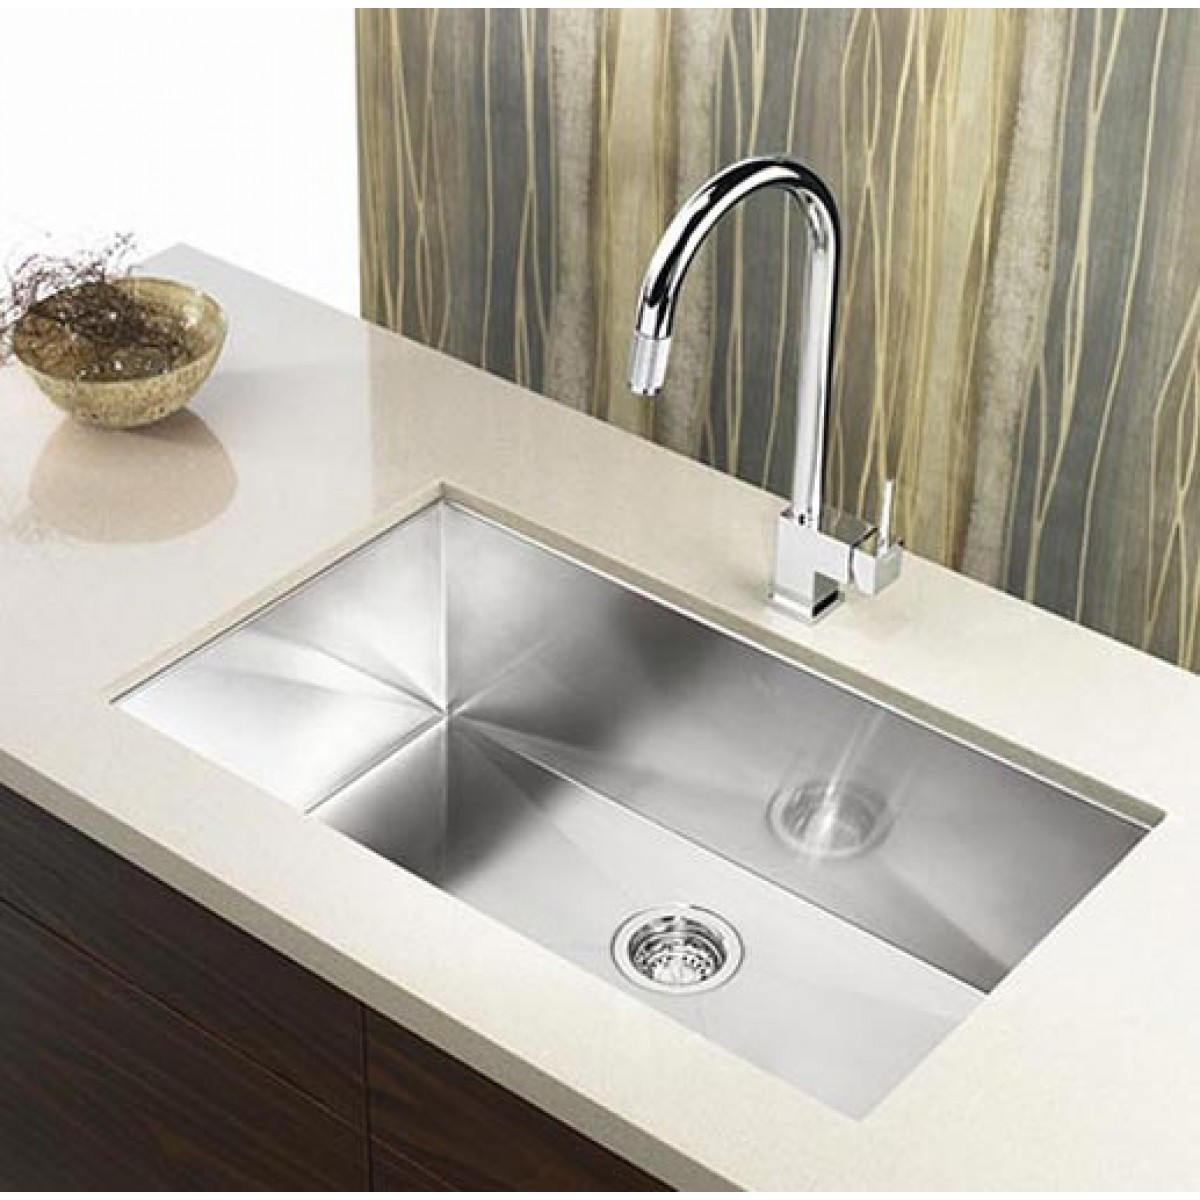 30 Inch Stainless Steel Undermount Single Bowl Kitchen Sink